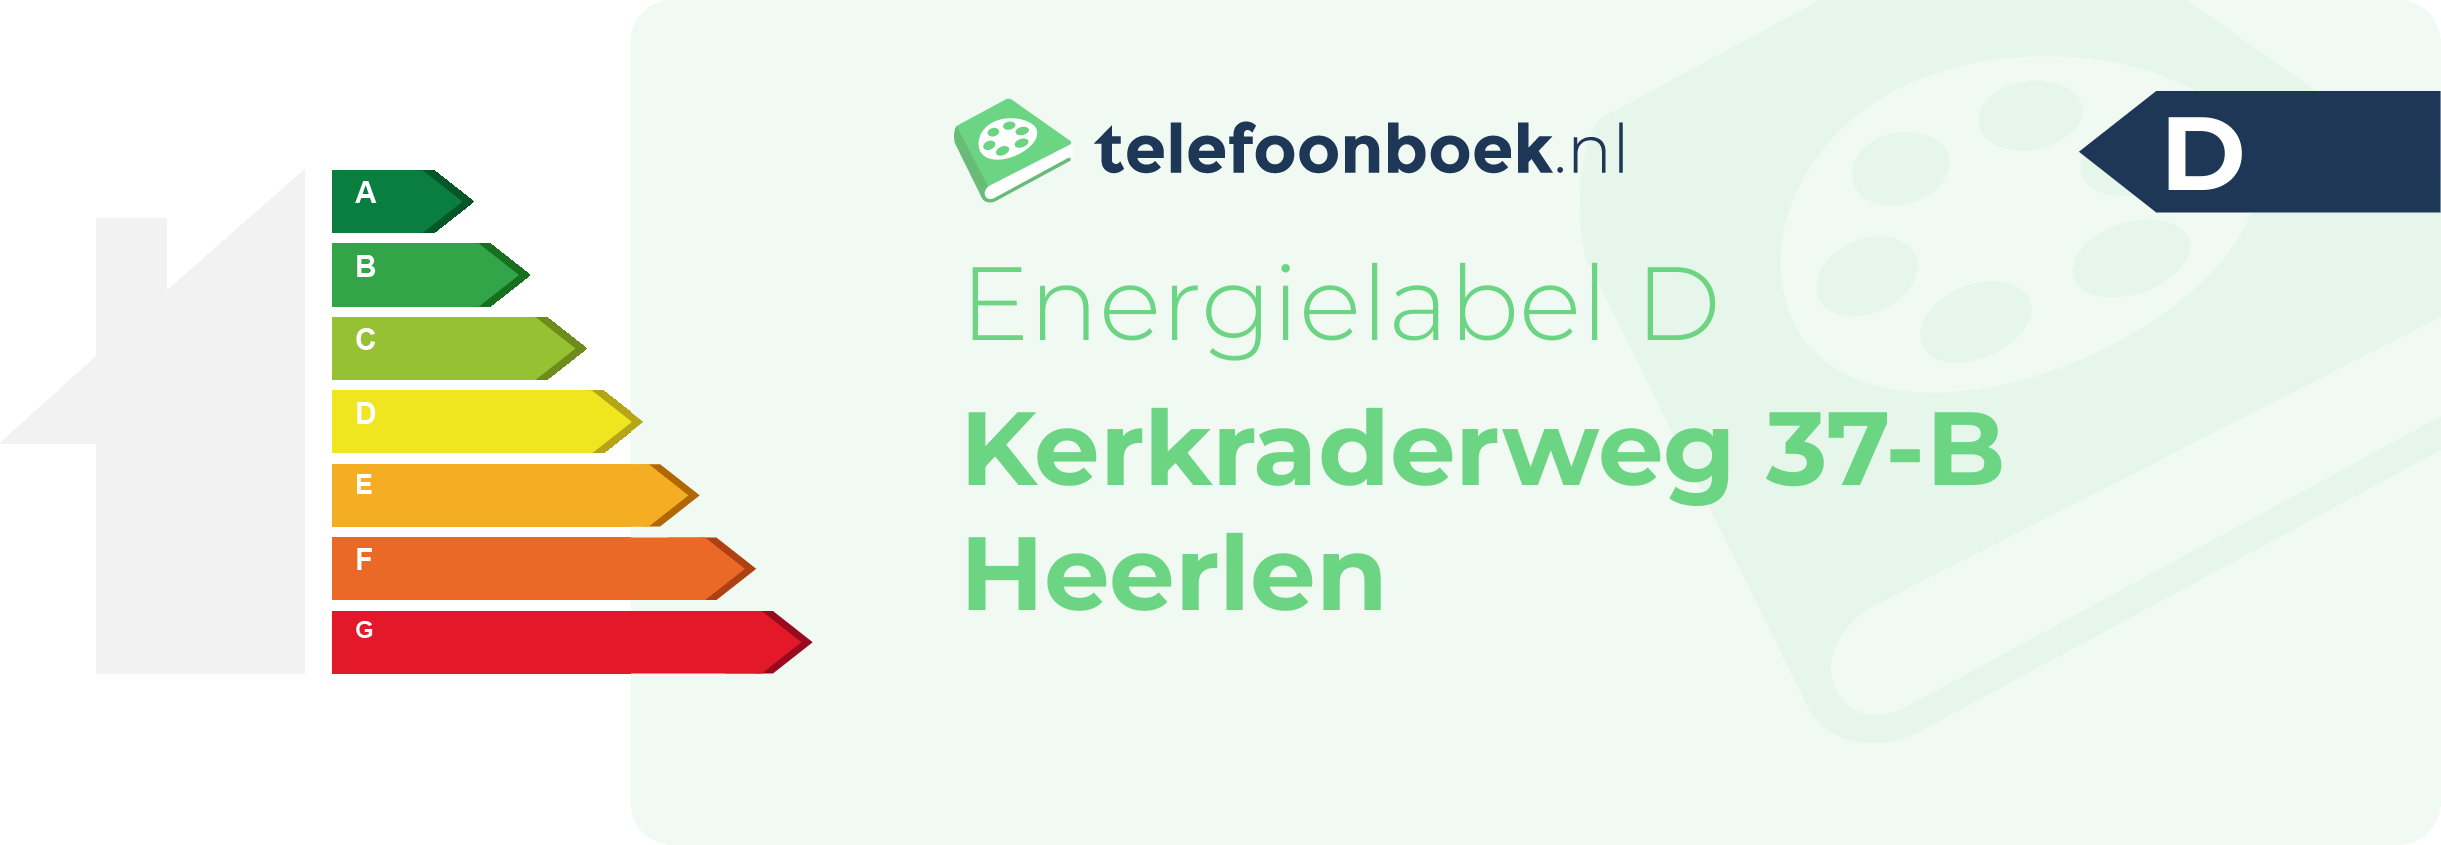 Energielabel Kerkraderweg 37-B Heerlen